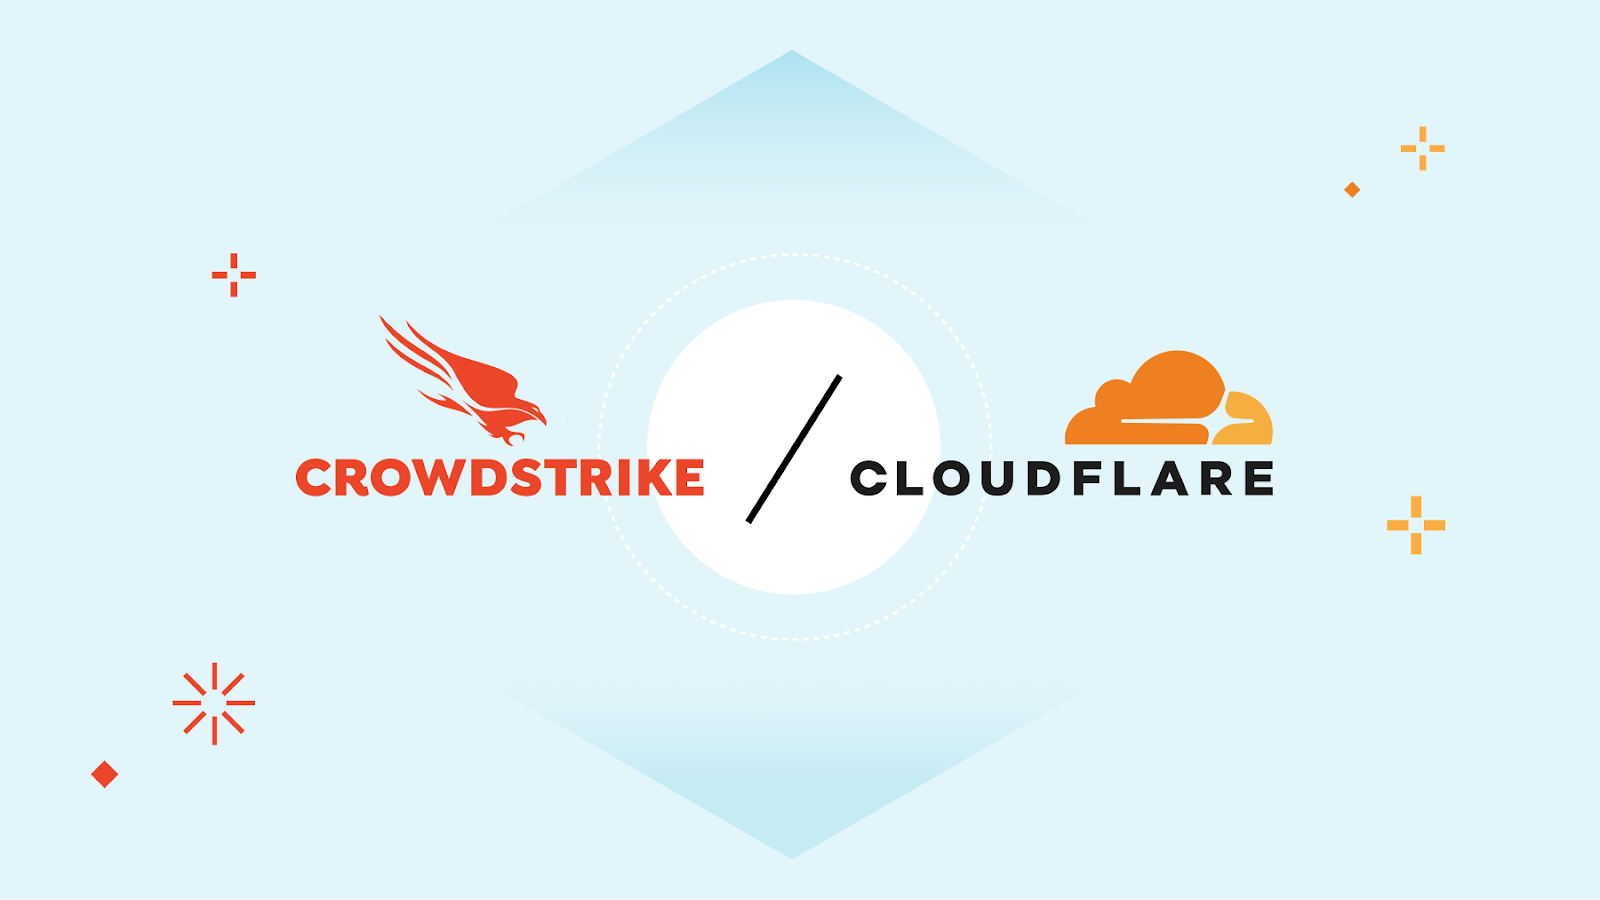 Cloudflare und CrowdStrike arbeiten zusammen, um CISOs eine sichere Kontrolle über Geräte, Anwendungen und Unternehmensnetzwerke zu ermöglichen